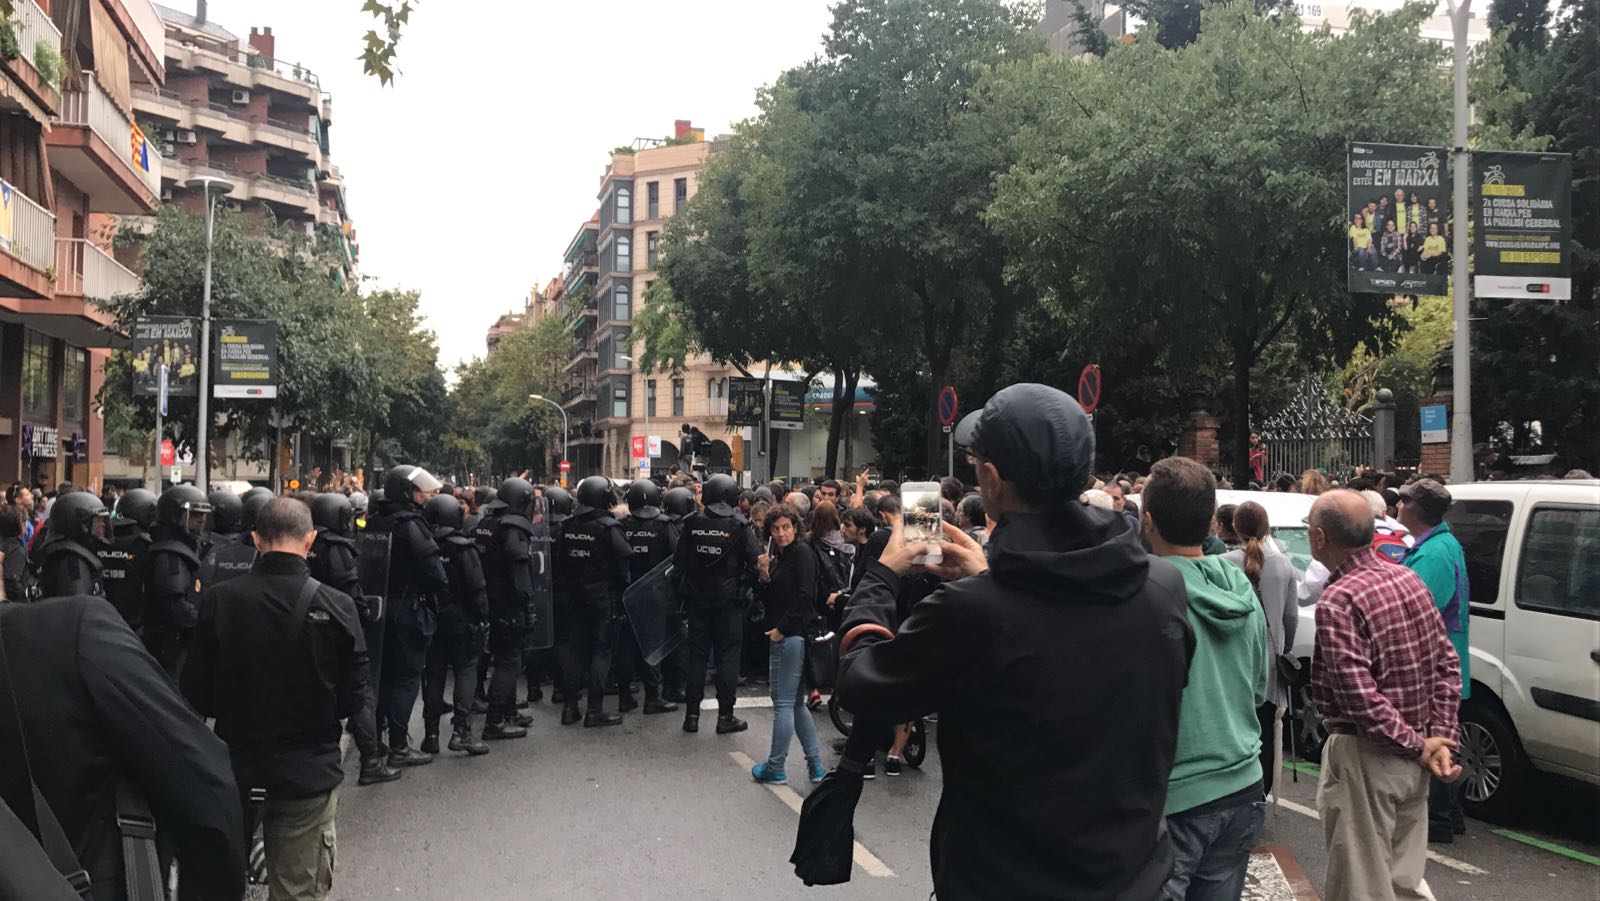 Policia i Guàrdia Civil ja han sortit de bases i es despleguen per Catalunya